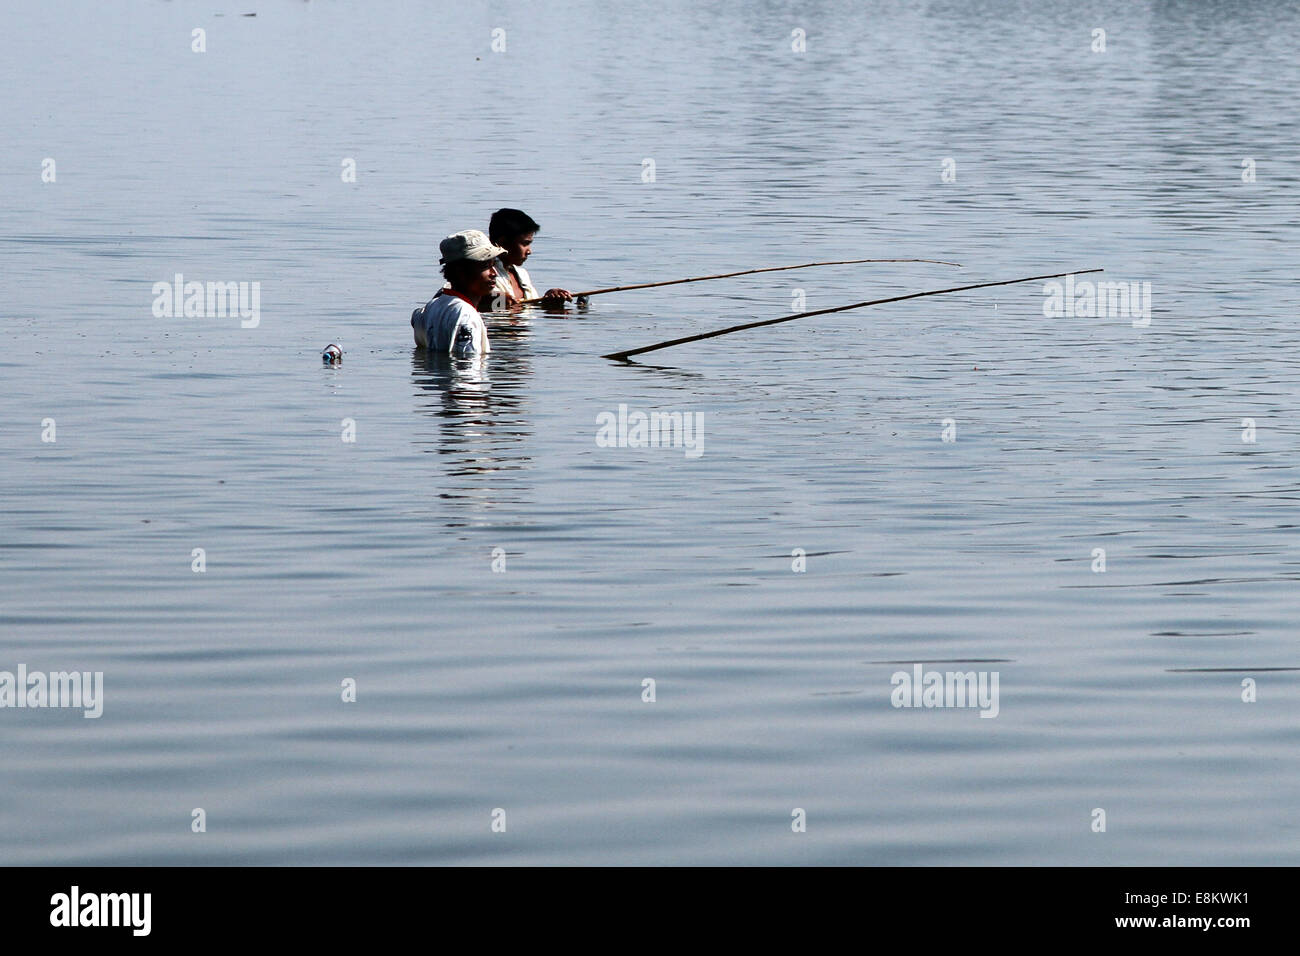 La pesca in lago Taungthaman, Amarapura, Birmania (Myanmar) Foto Stock